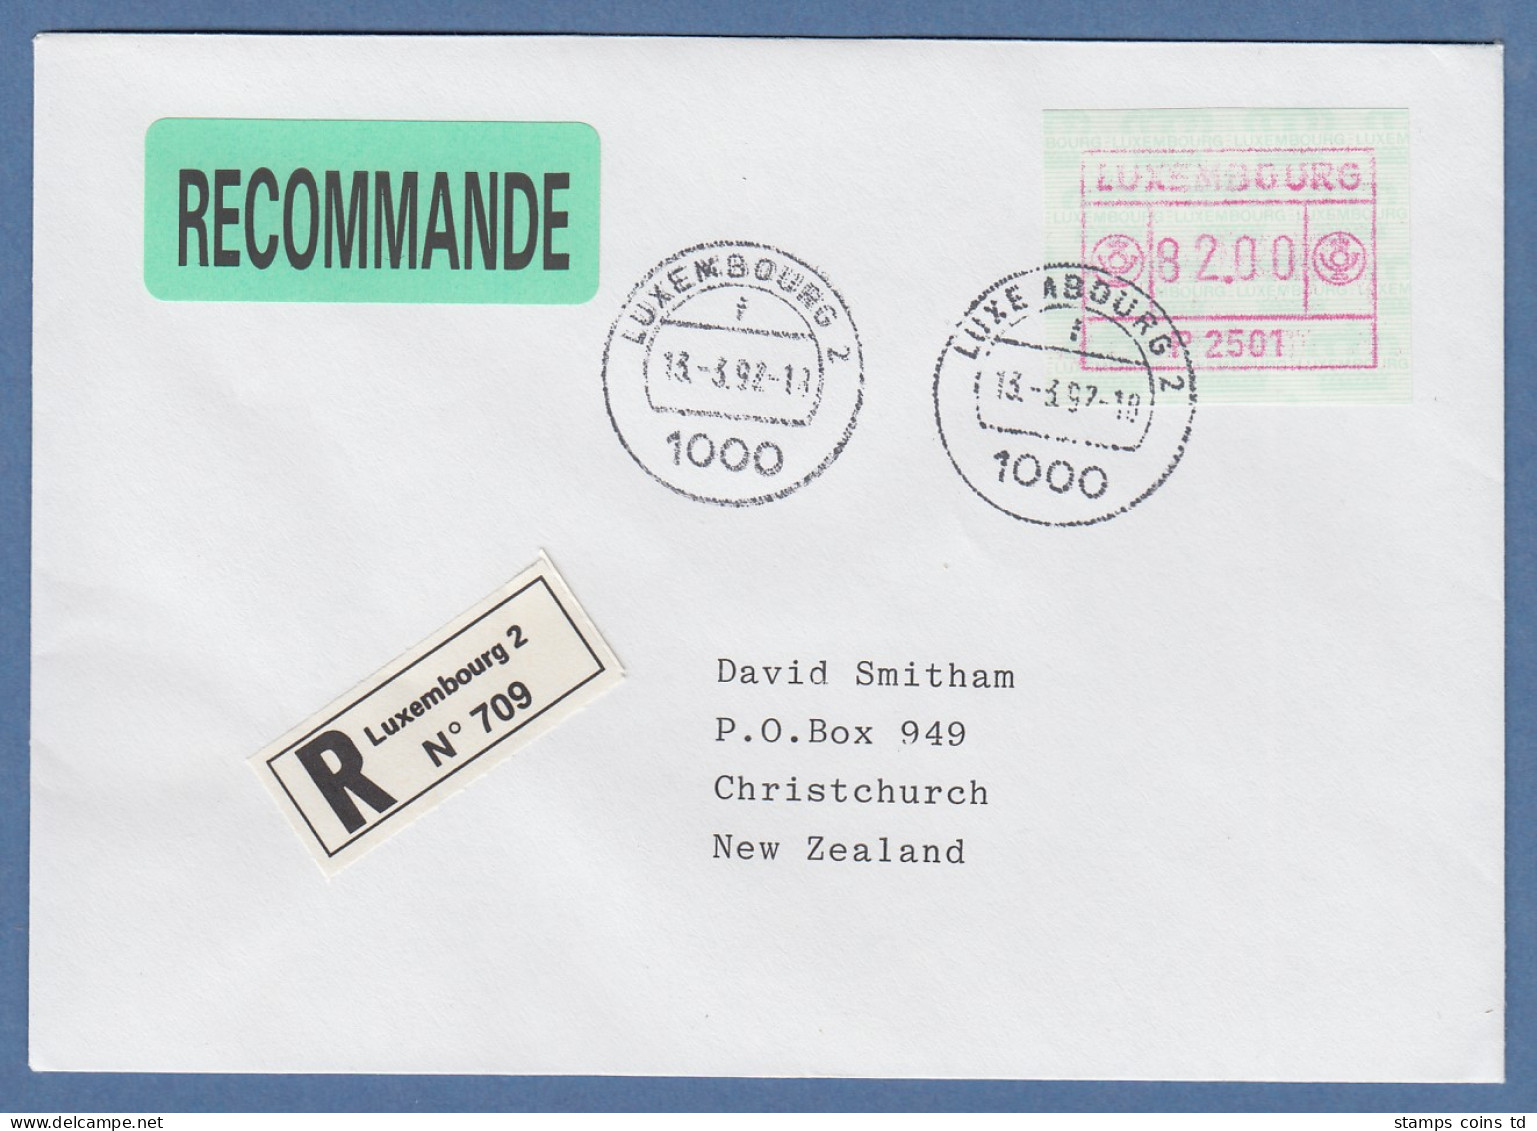 Luxemburg ATM P2501 Wert 82 Auf R-Brief Nach Neuseeland, O 13.3.92 - Automatenmarken